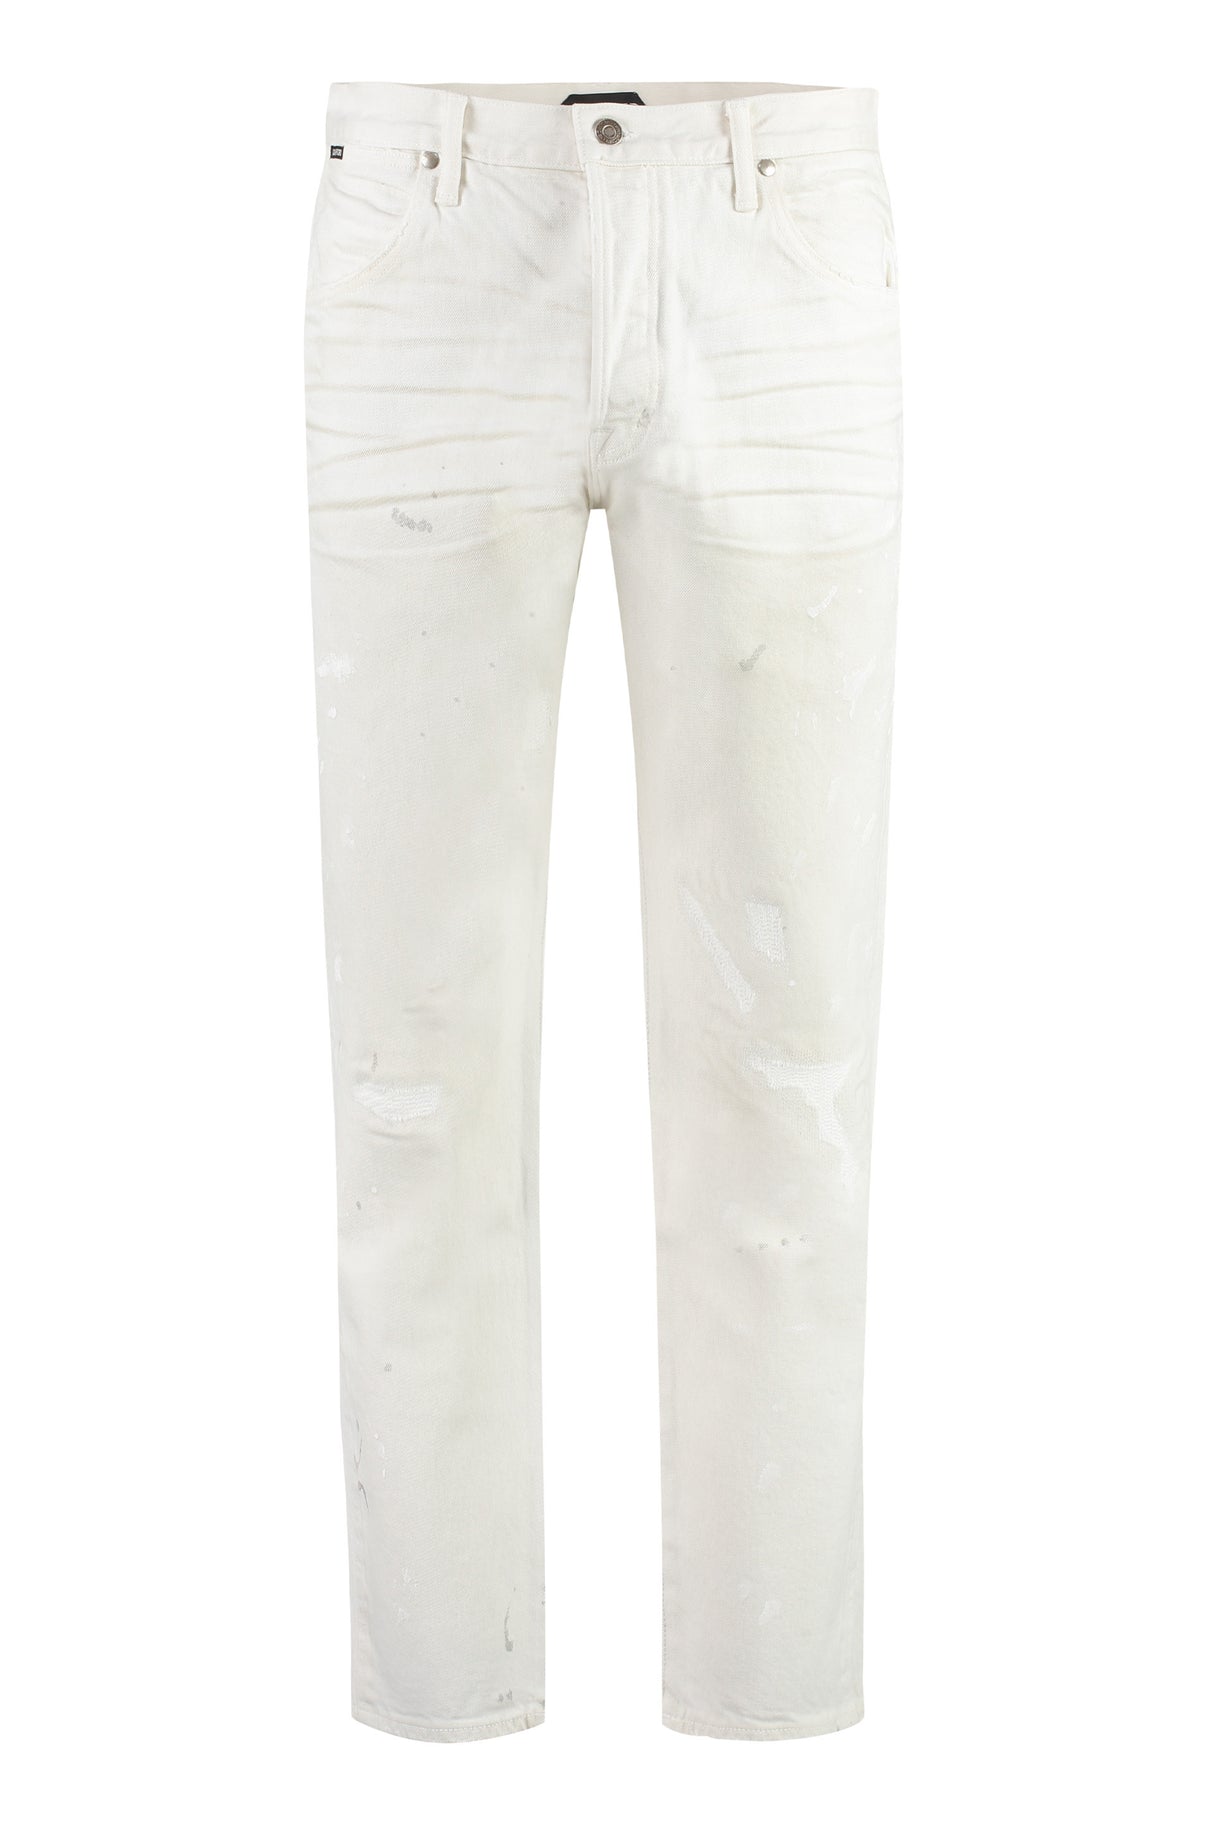 Quần Jeans straight-leg 5 túi màu trắng THANH LỊCH nam  với miếng da và những vết nứt gốc